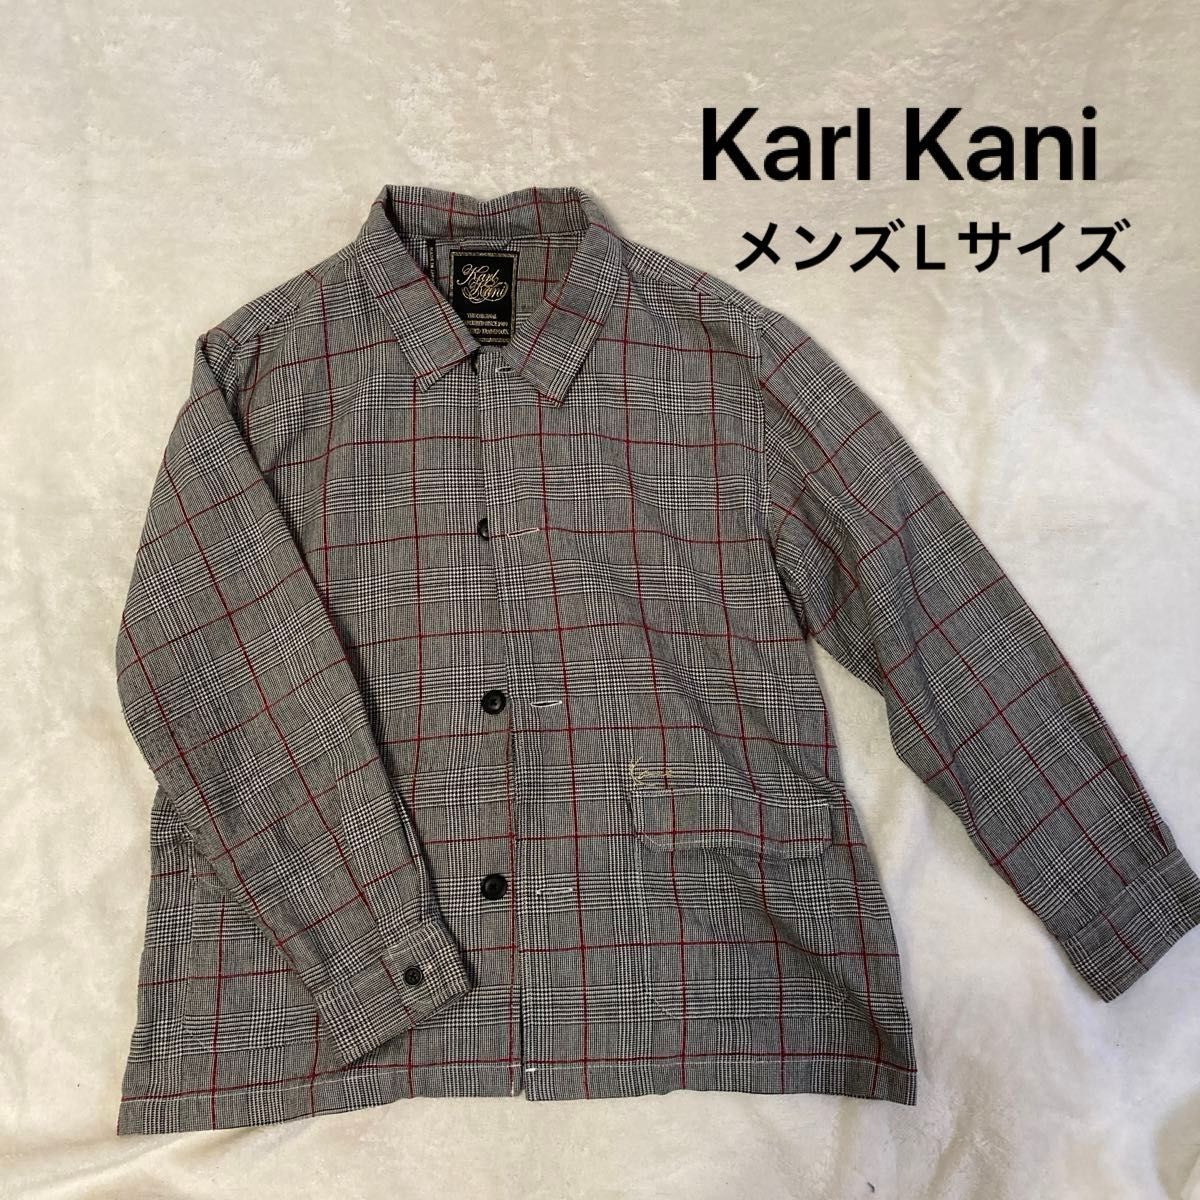 Karl Kani シャツ ジャケット オーバーサイズ L グレー チェック メンズ